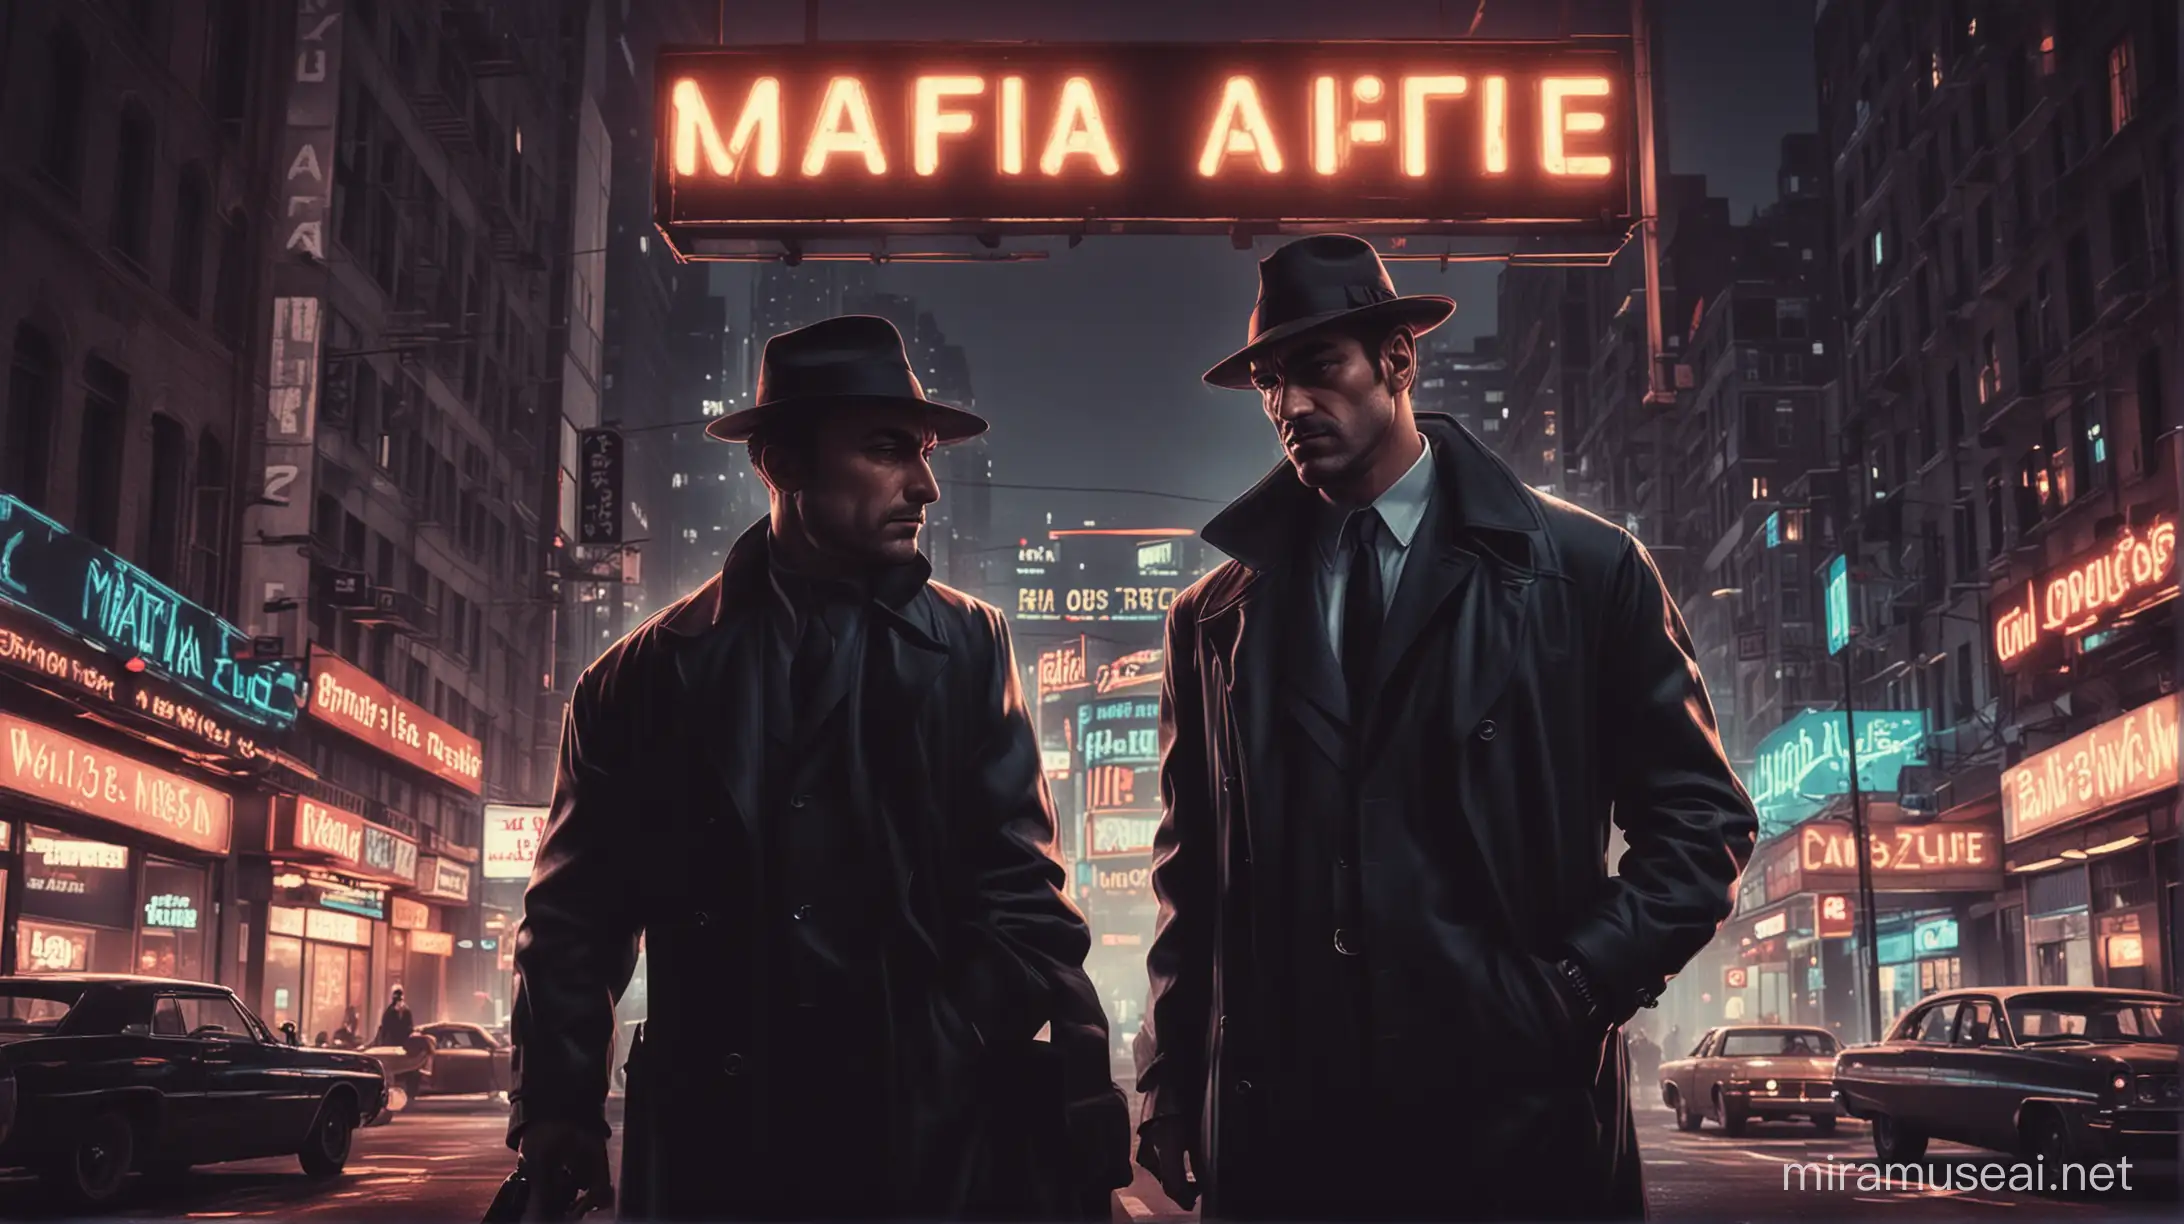 Urban Investigators Confronting Mafia Boss Amid Neon Signs